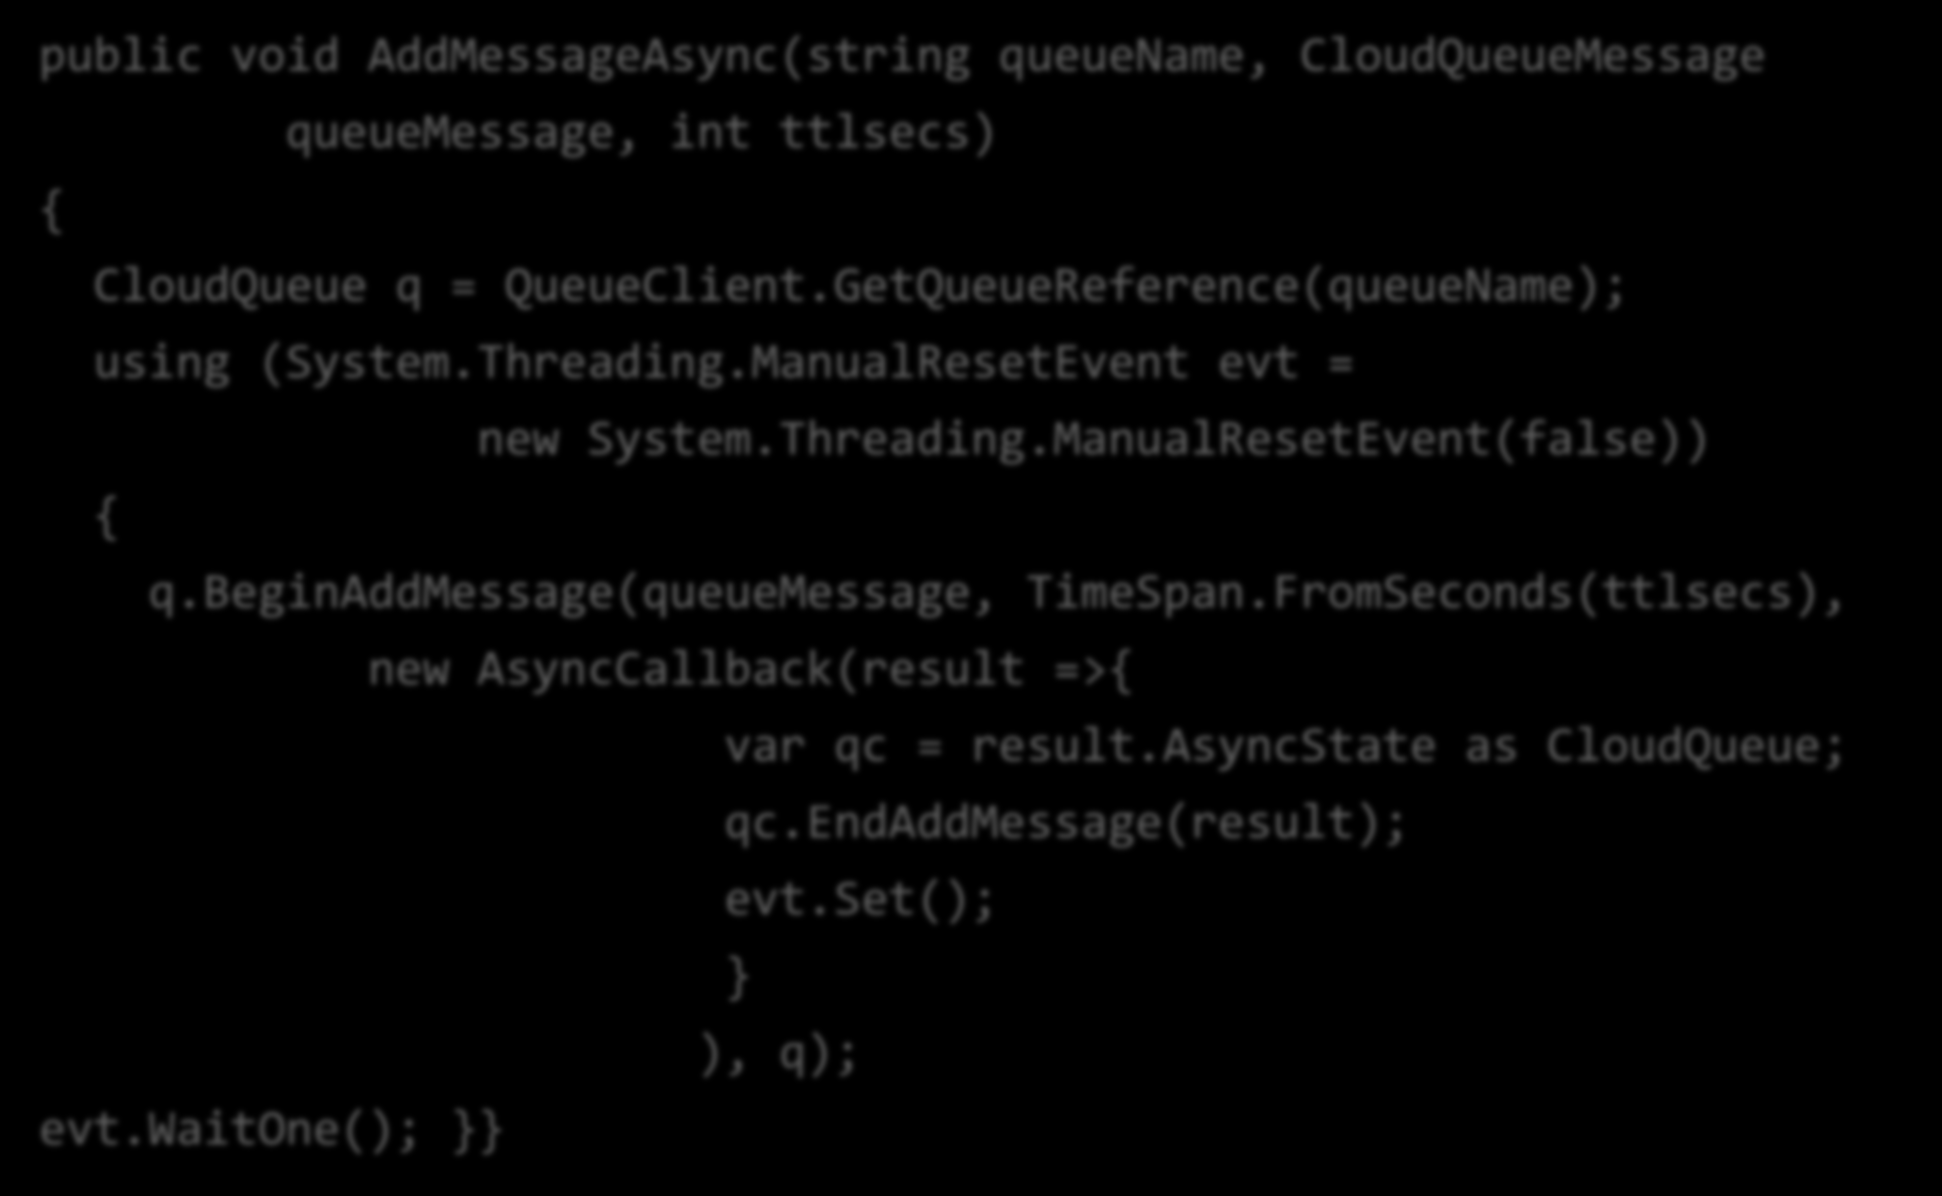 StorageClient API: Suporte assíncrono public void AddMessageAsync(string queuename, CloudQueueMessage queuemessage, int ttlsecs) { CloudQueue q = QueueClient.